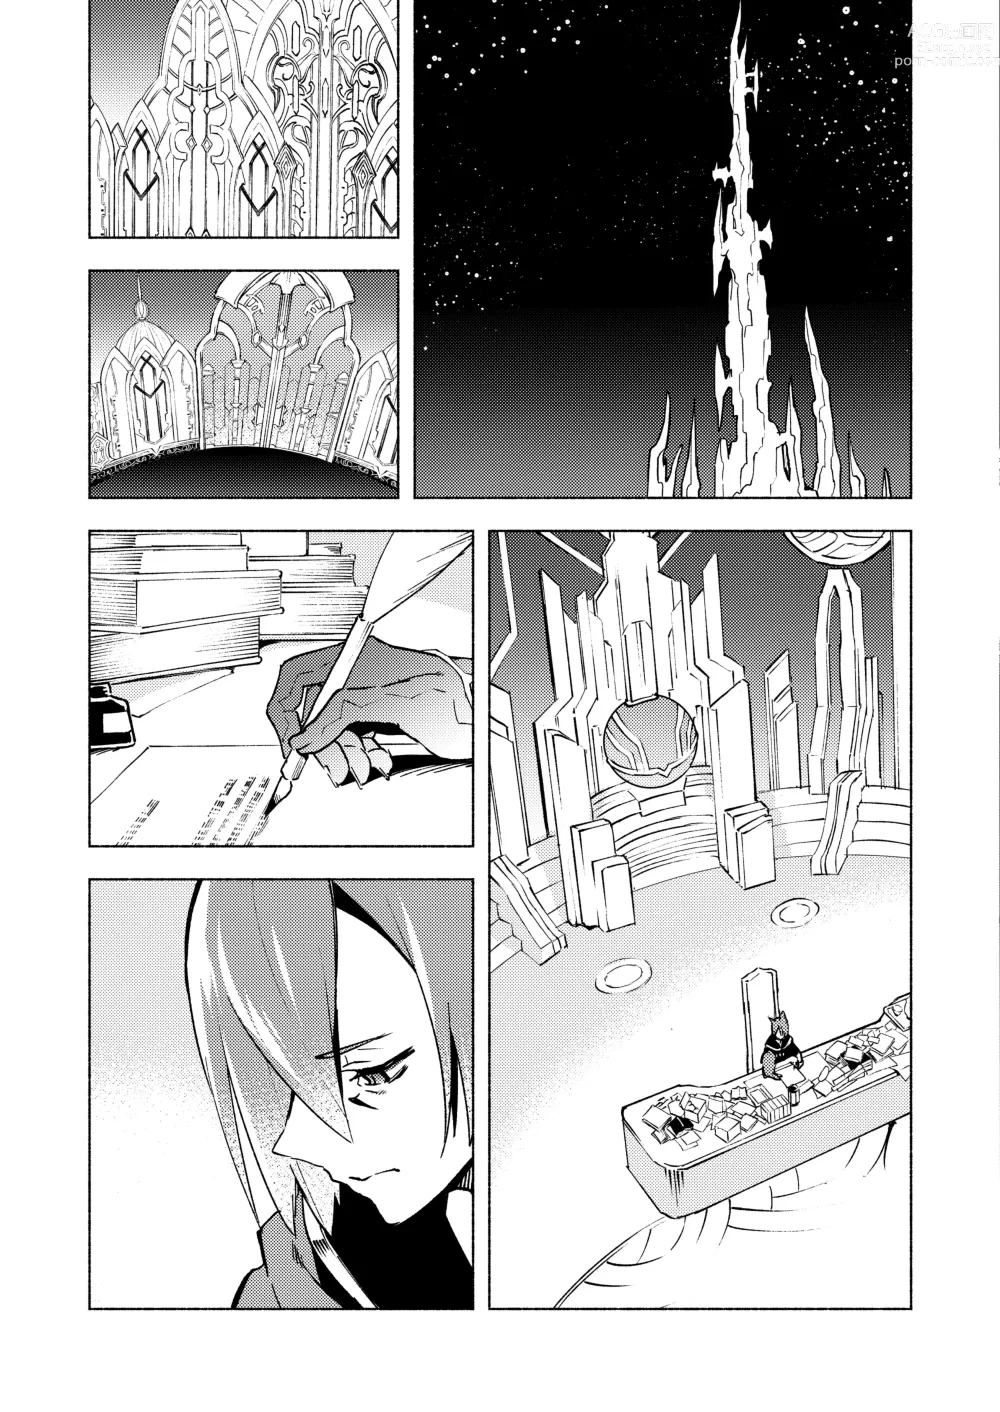 Page 7 of doujinshi Koi no Uta, Ai no Uta.